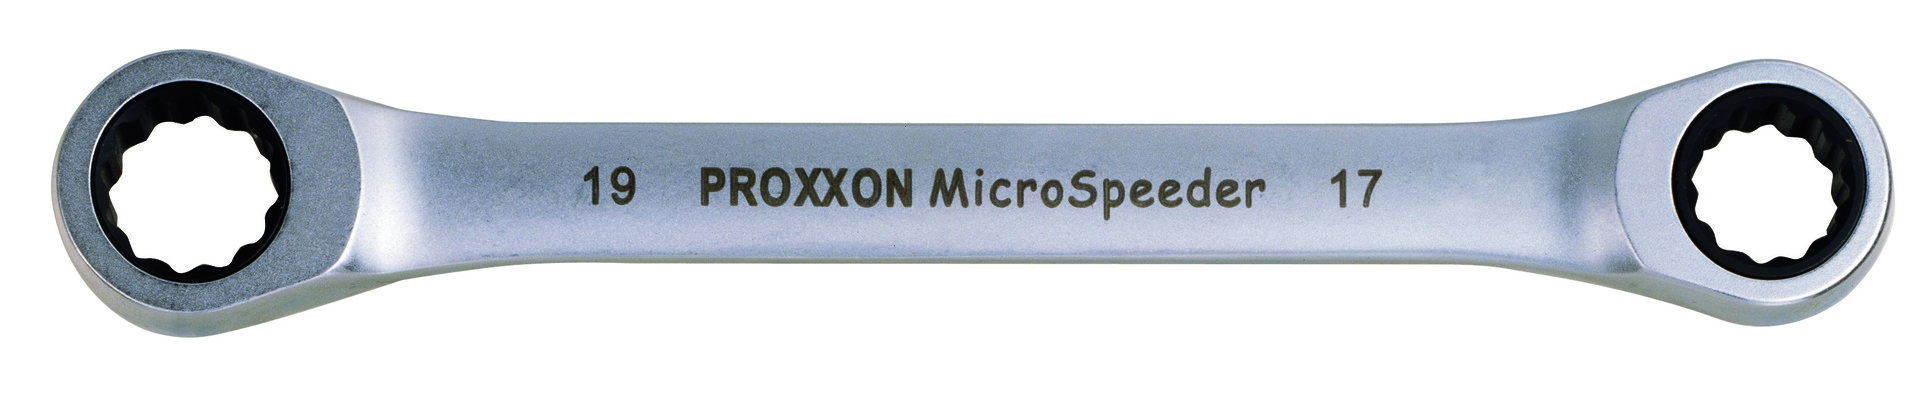 PROXXON GmbH Micro-Speeder Ratschenschlüssel 14x15mm